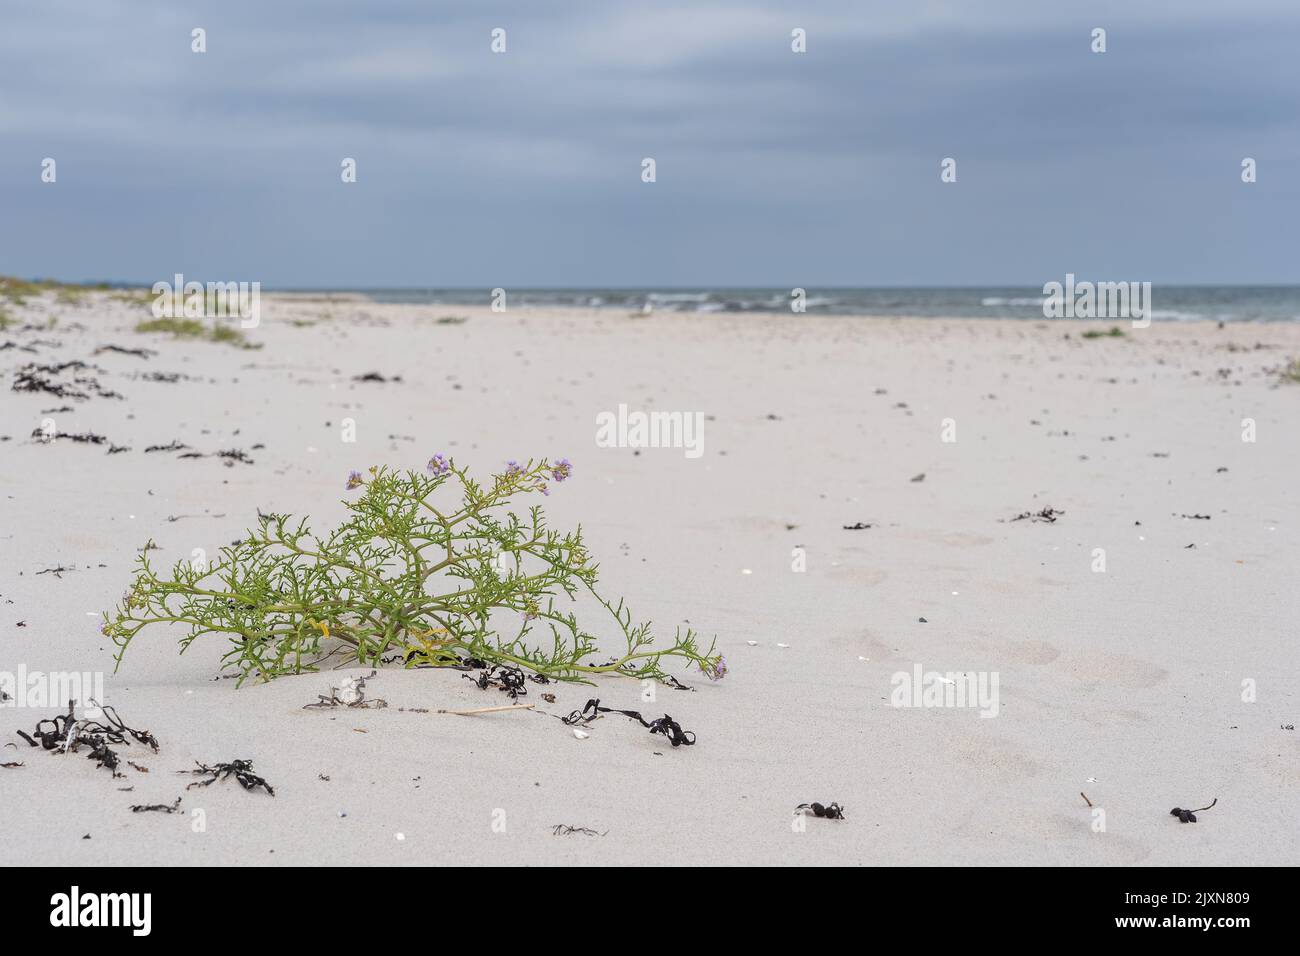 A close-up shot of Cakile maritima bush on a beach Stock Photo